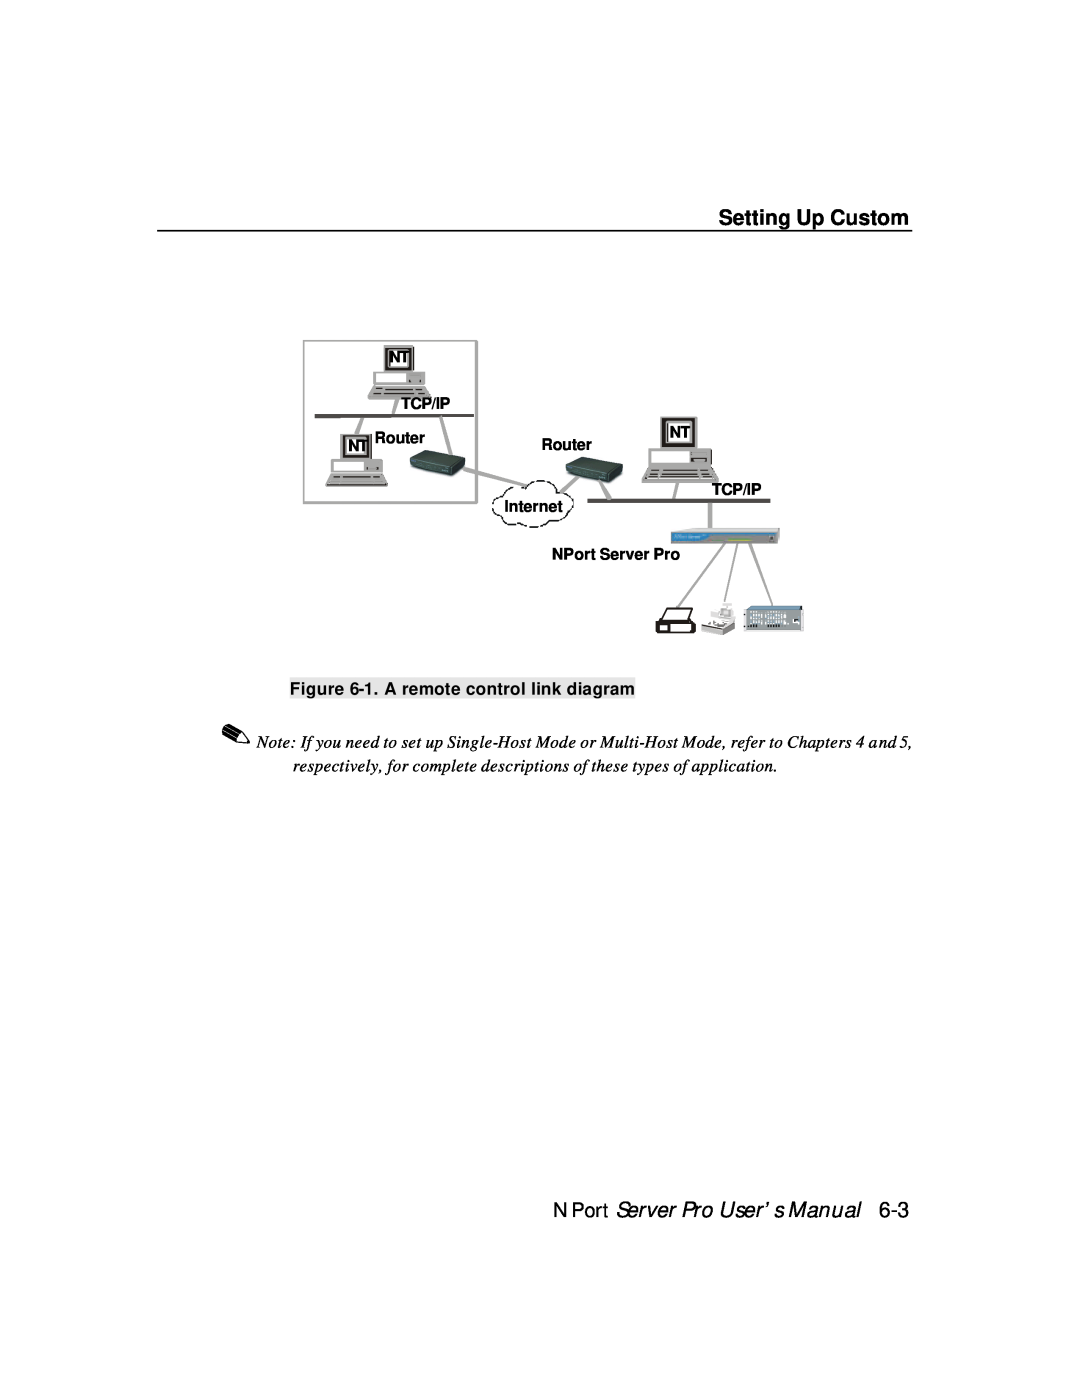 Moxa Technologies DE-308, DE-303 manual Setting Up Custom, NPort Server Pro User’s Manual, 1. A remote control link diagram 